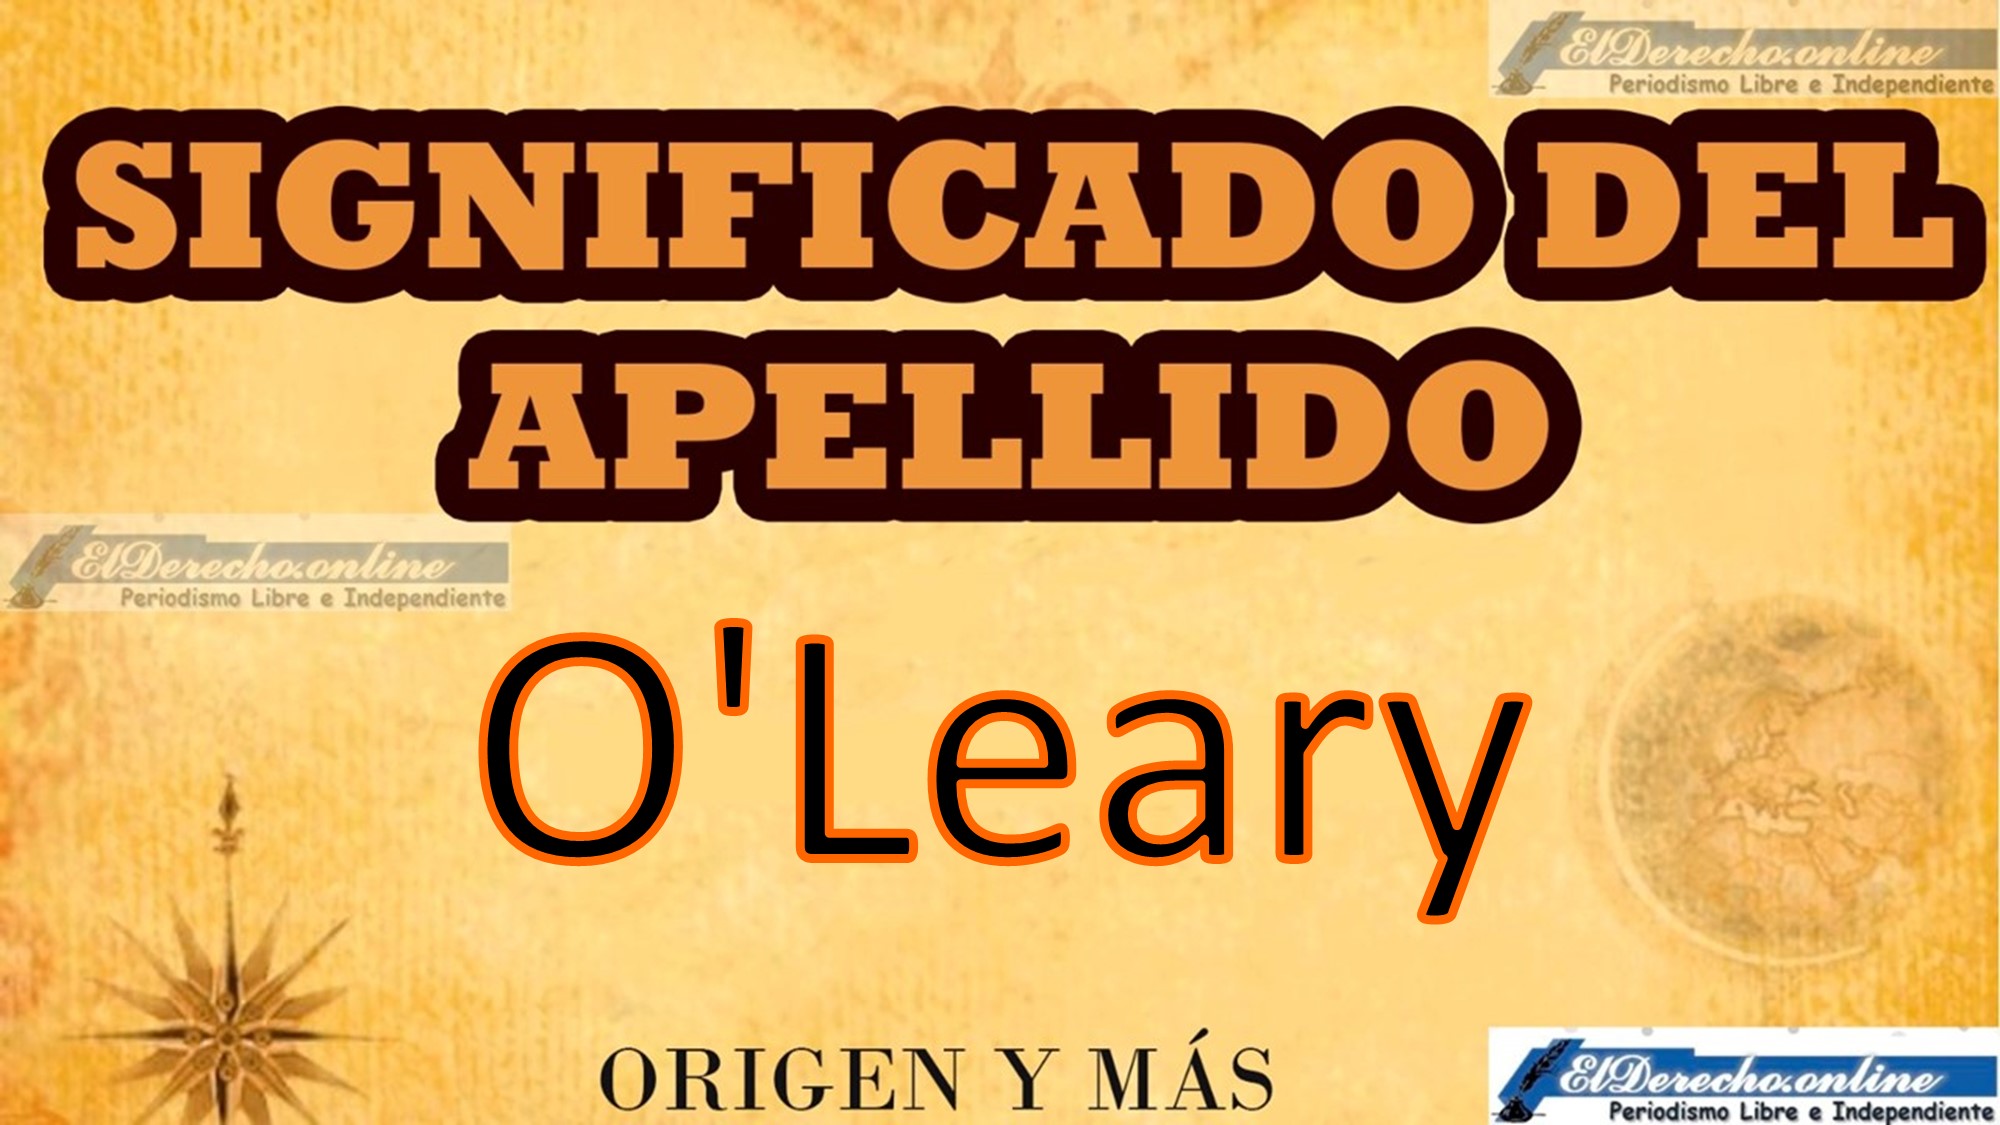 Significado del apellido O'Leary, Origen y más